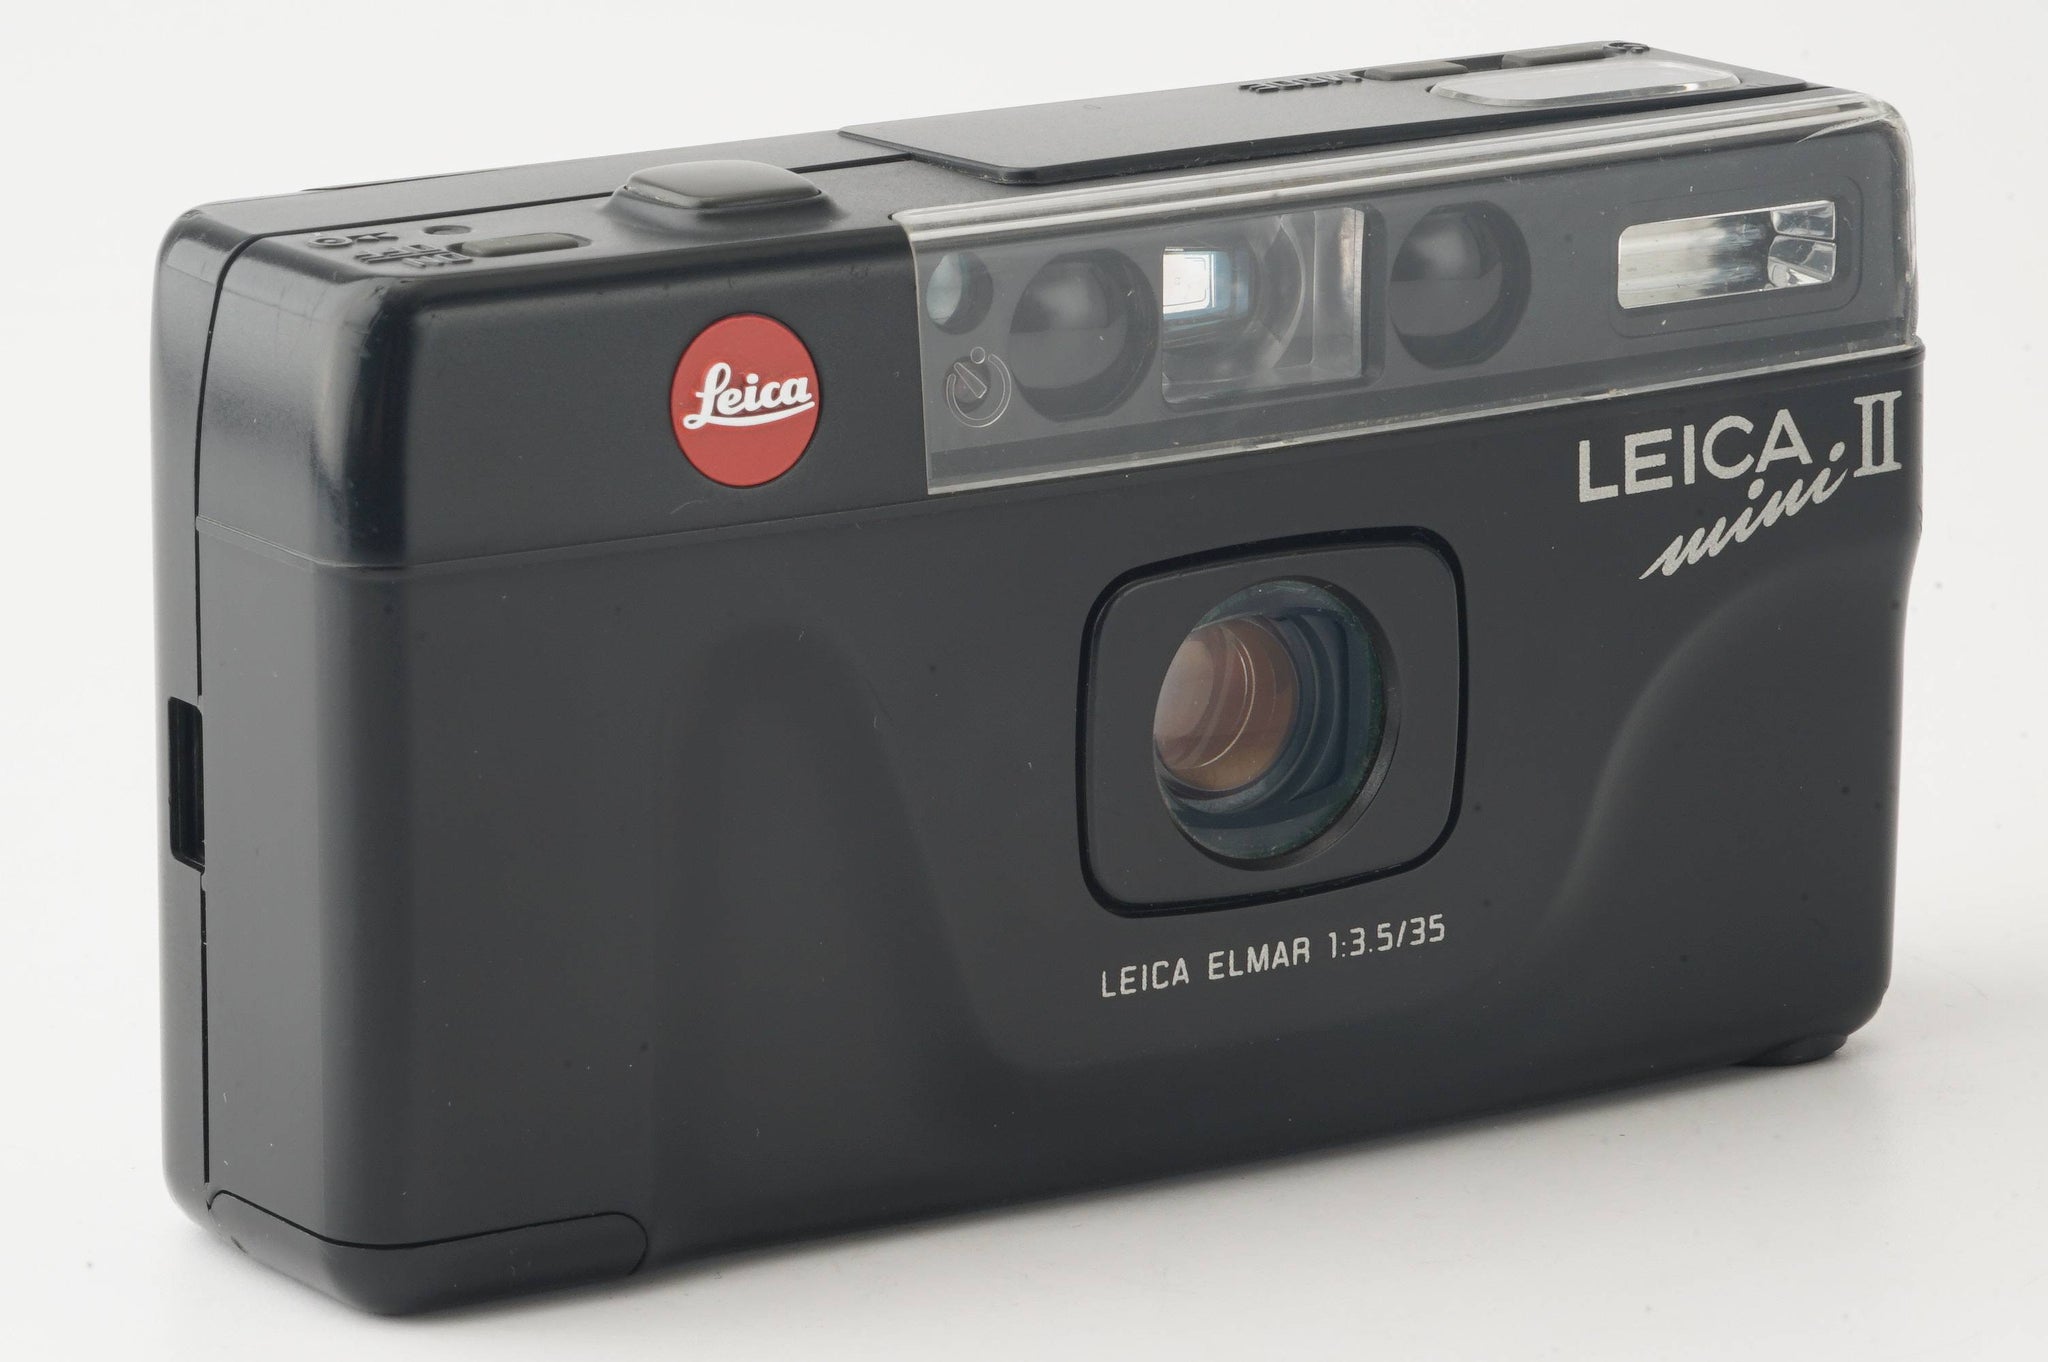 ライカLeicaライカミニ Leica mini ELMAR 35mm f3.5 ポーチ付き